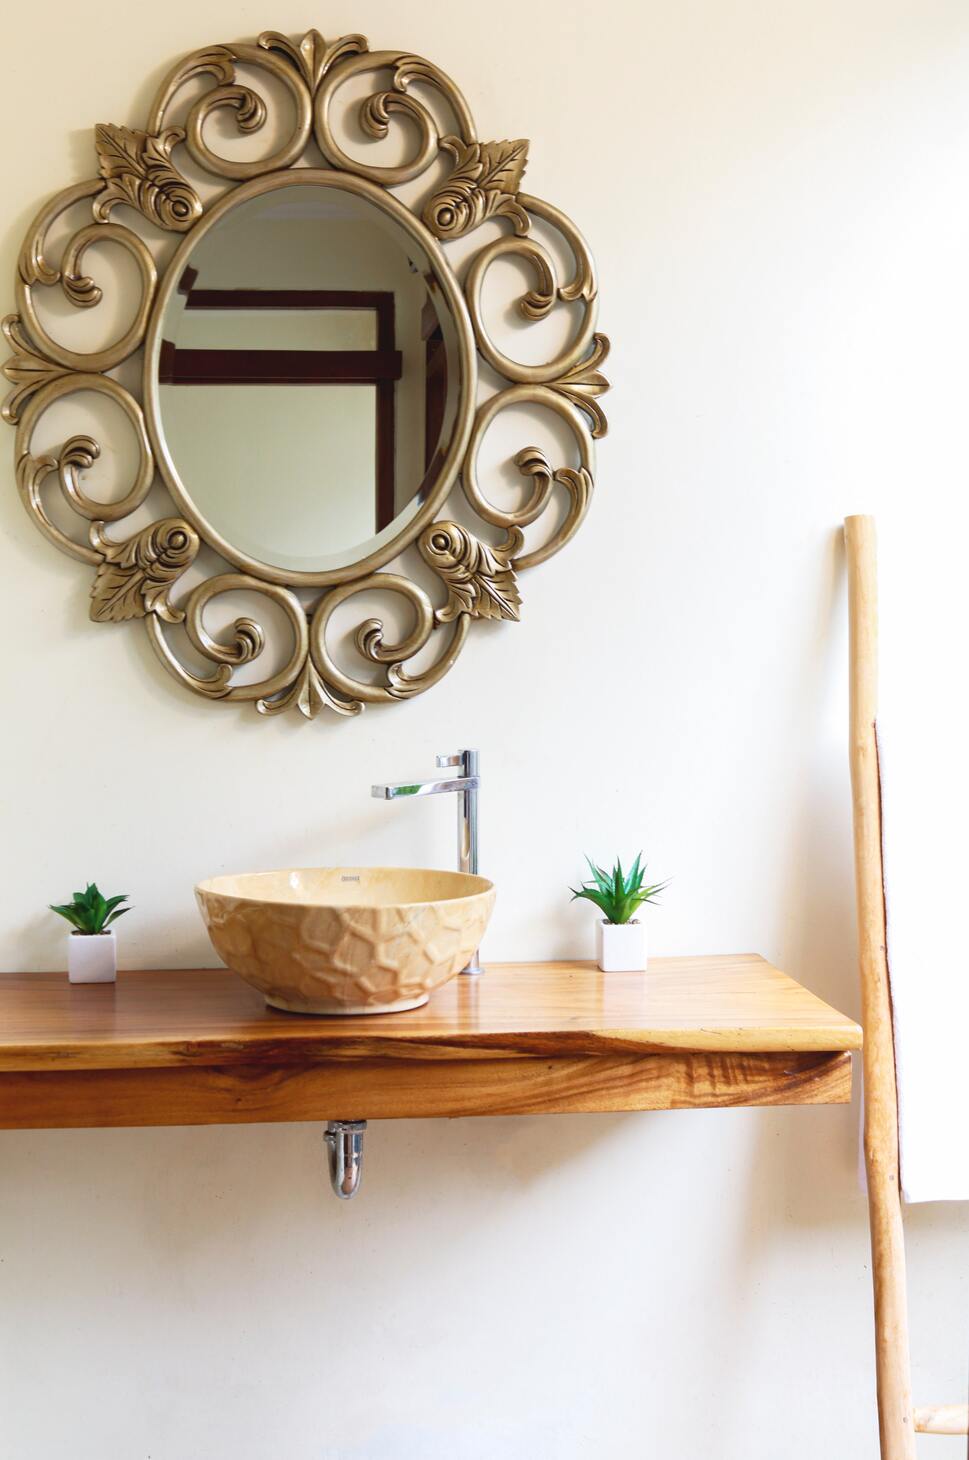 Spiegel mit goldenen Ornamenten, abgesetztes Waschbecken, rechts und links davon zwei kleine Pflanzen